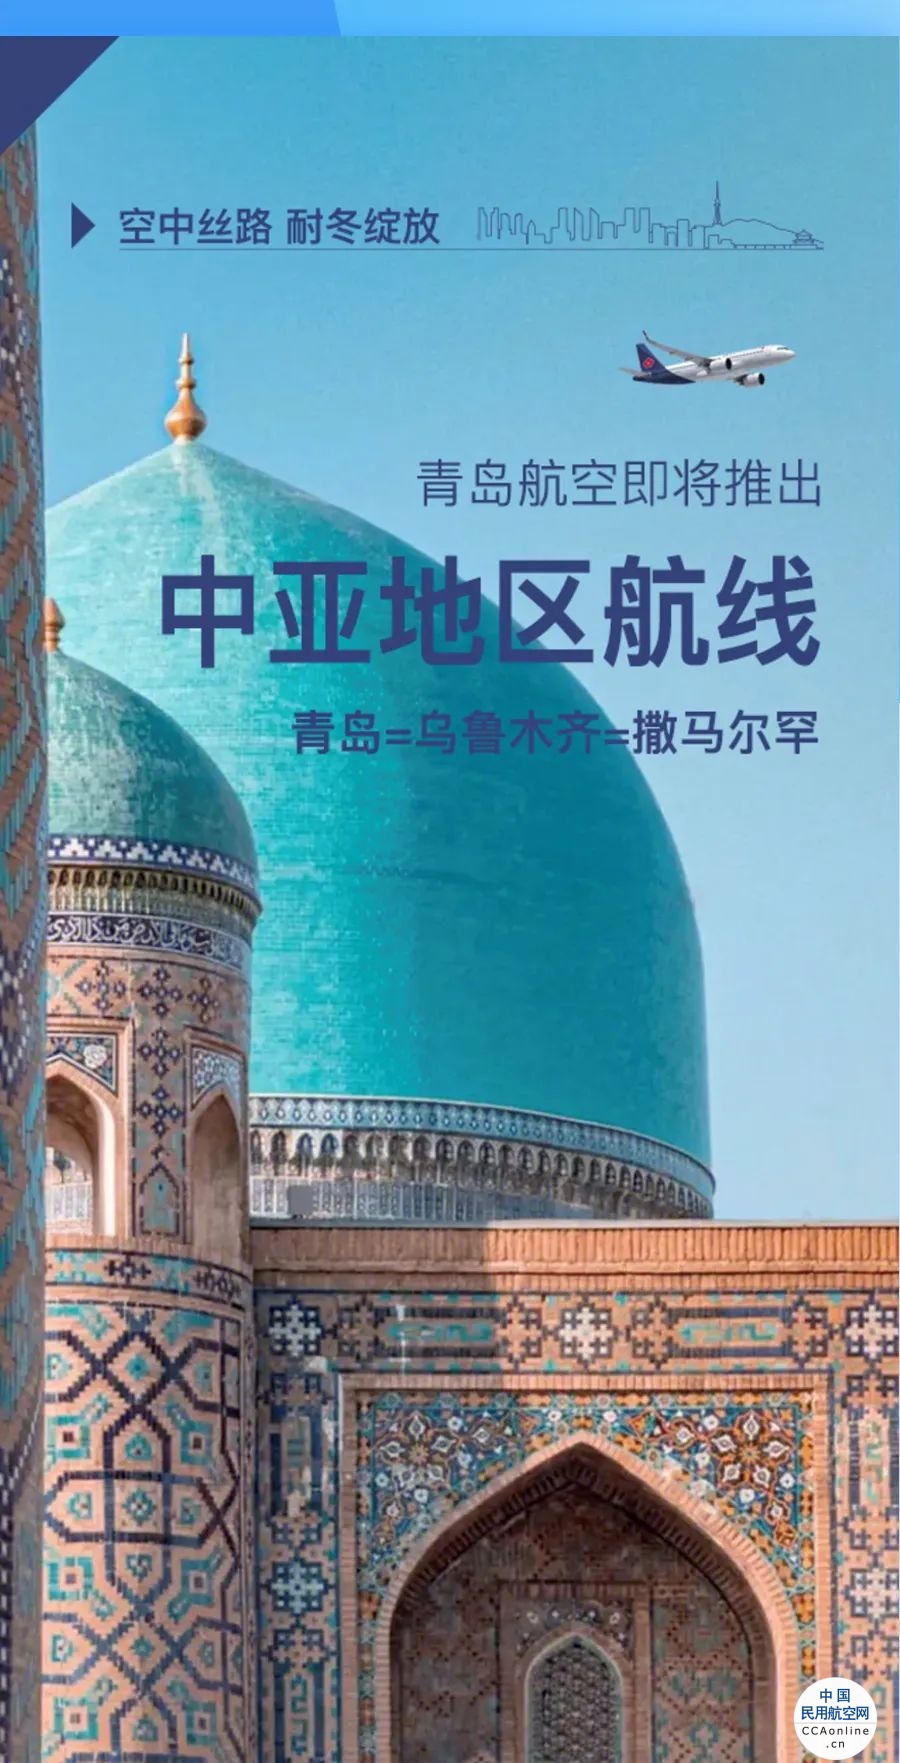 青岛与乌兹别克斯坦多方携手,空中上合之路建设再启新篇